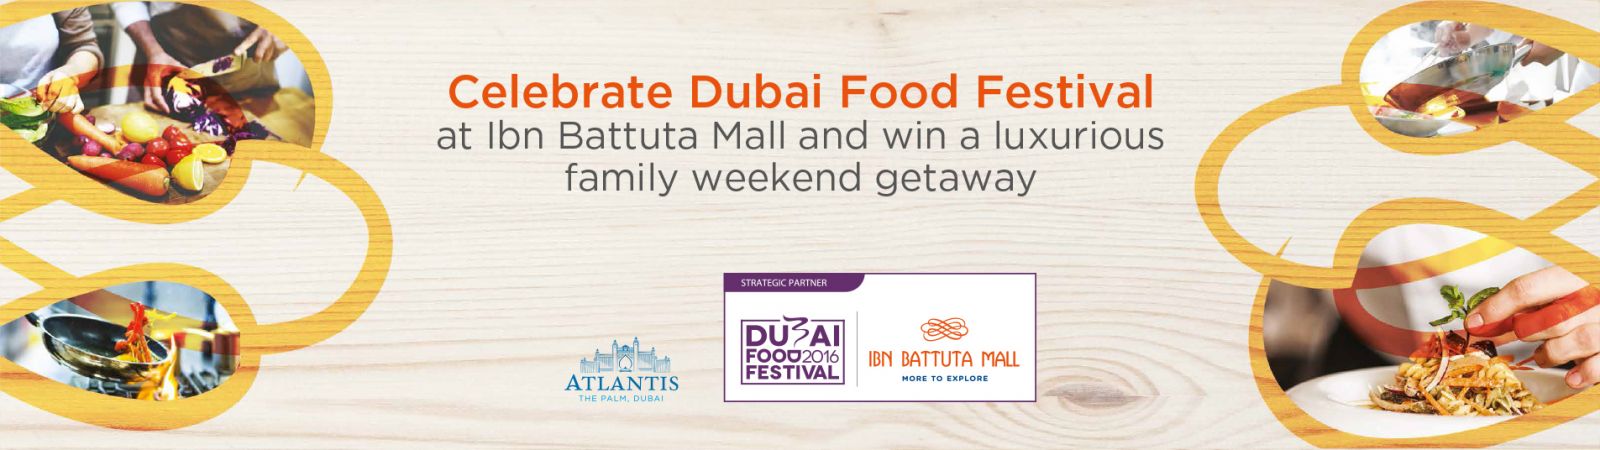 Dubai food Festival Celebration Ad